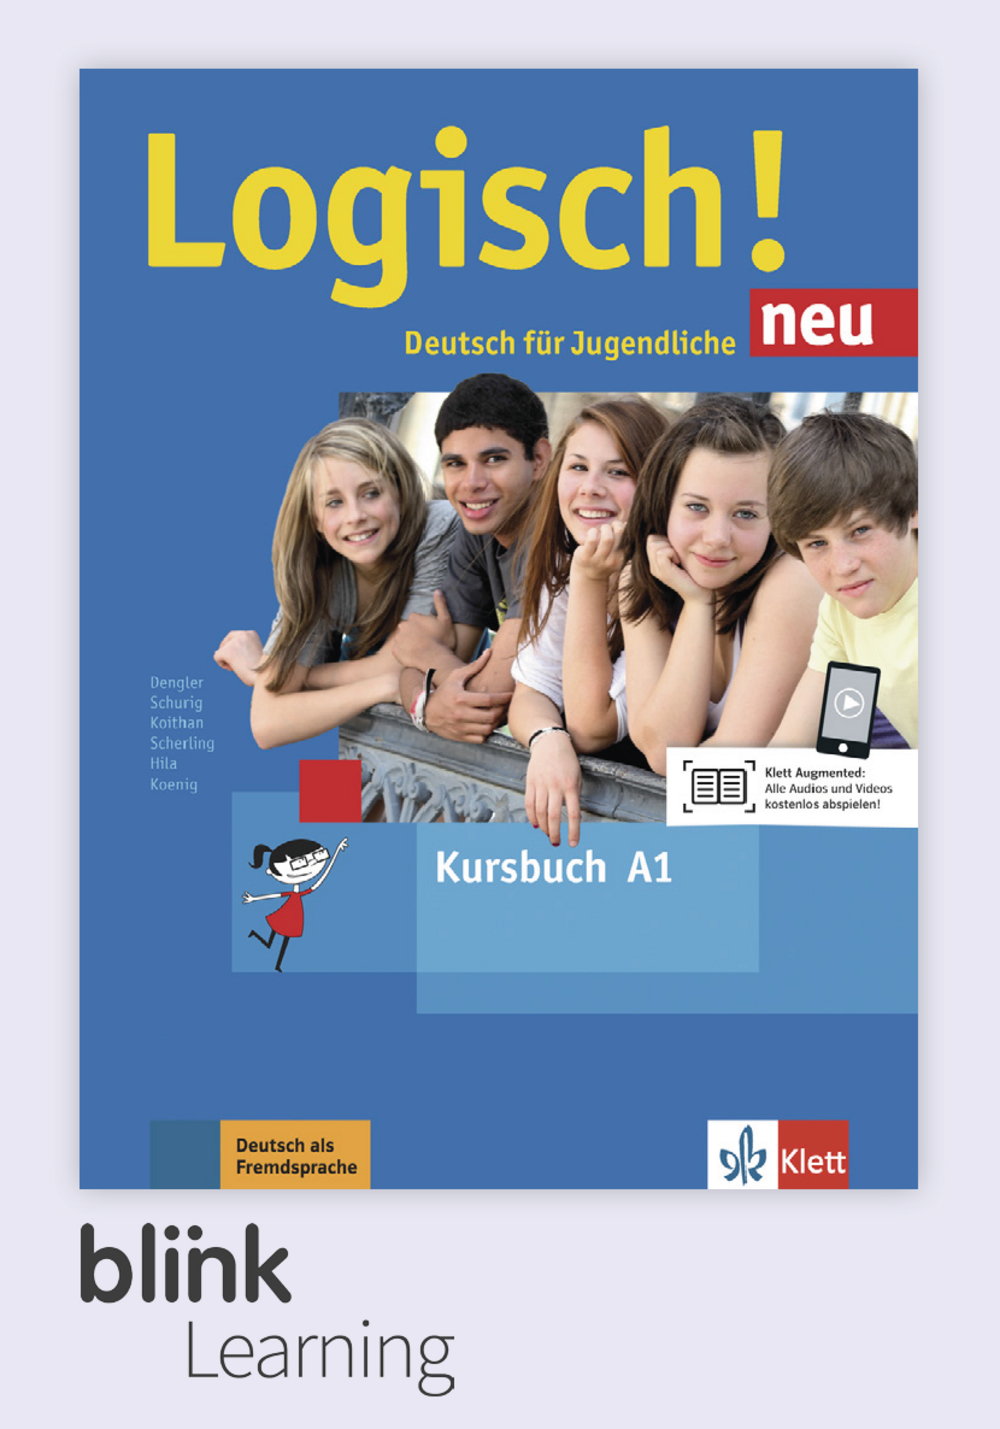 Logisch! neu A1 Digital Kursbuch fur Lernende / Цифровой учебник для ученика